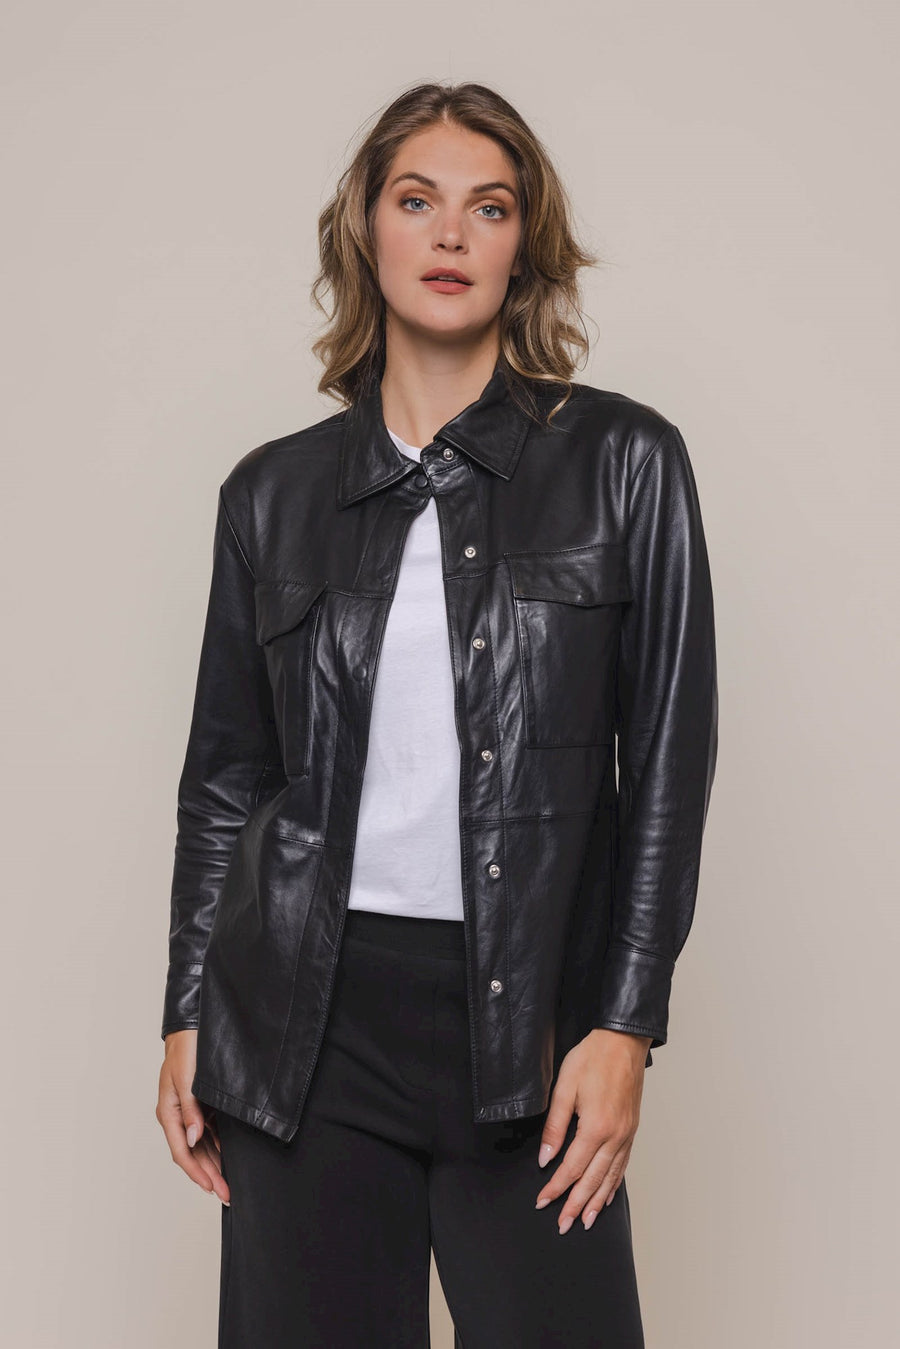 S4-MEZZI Shirt Jacket Leather Black